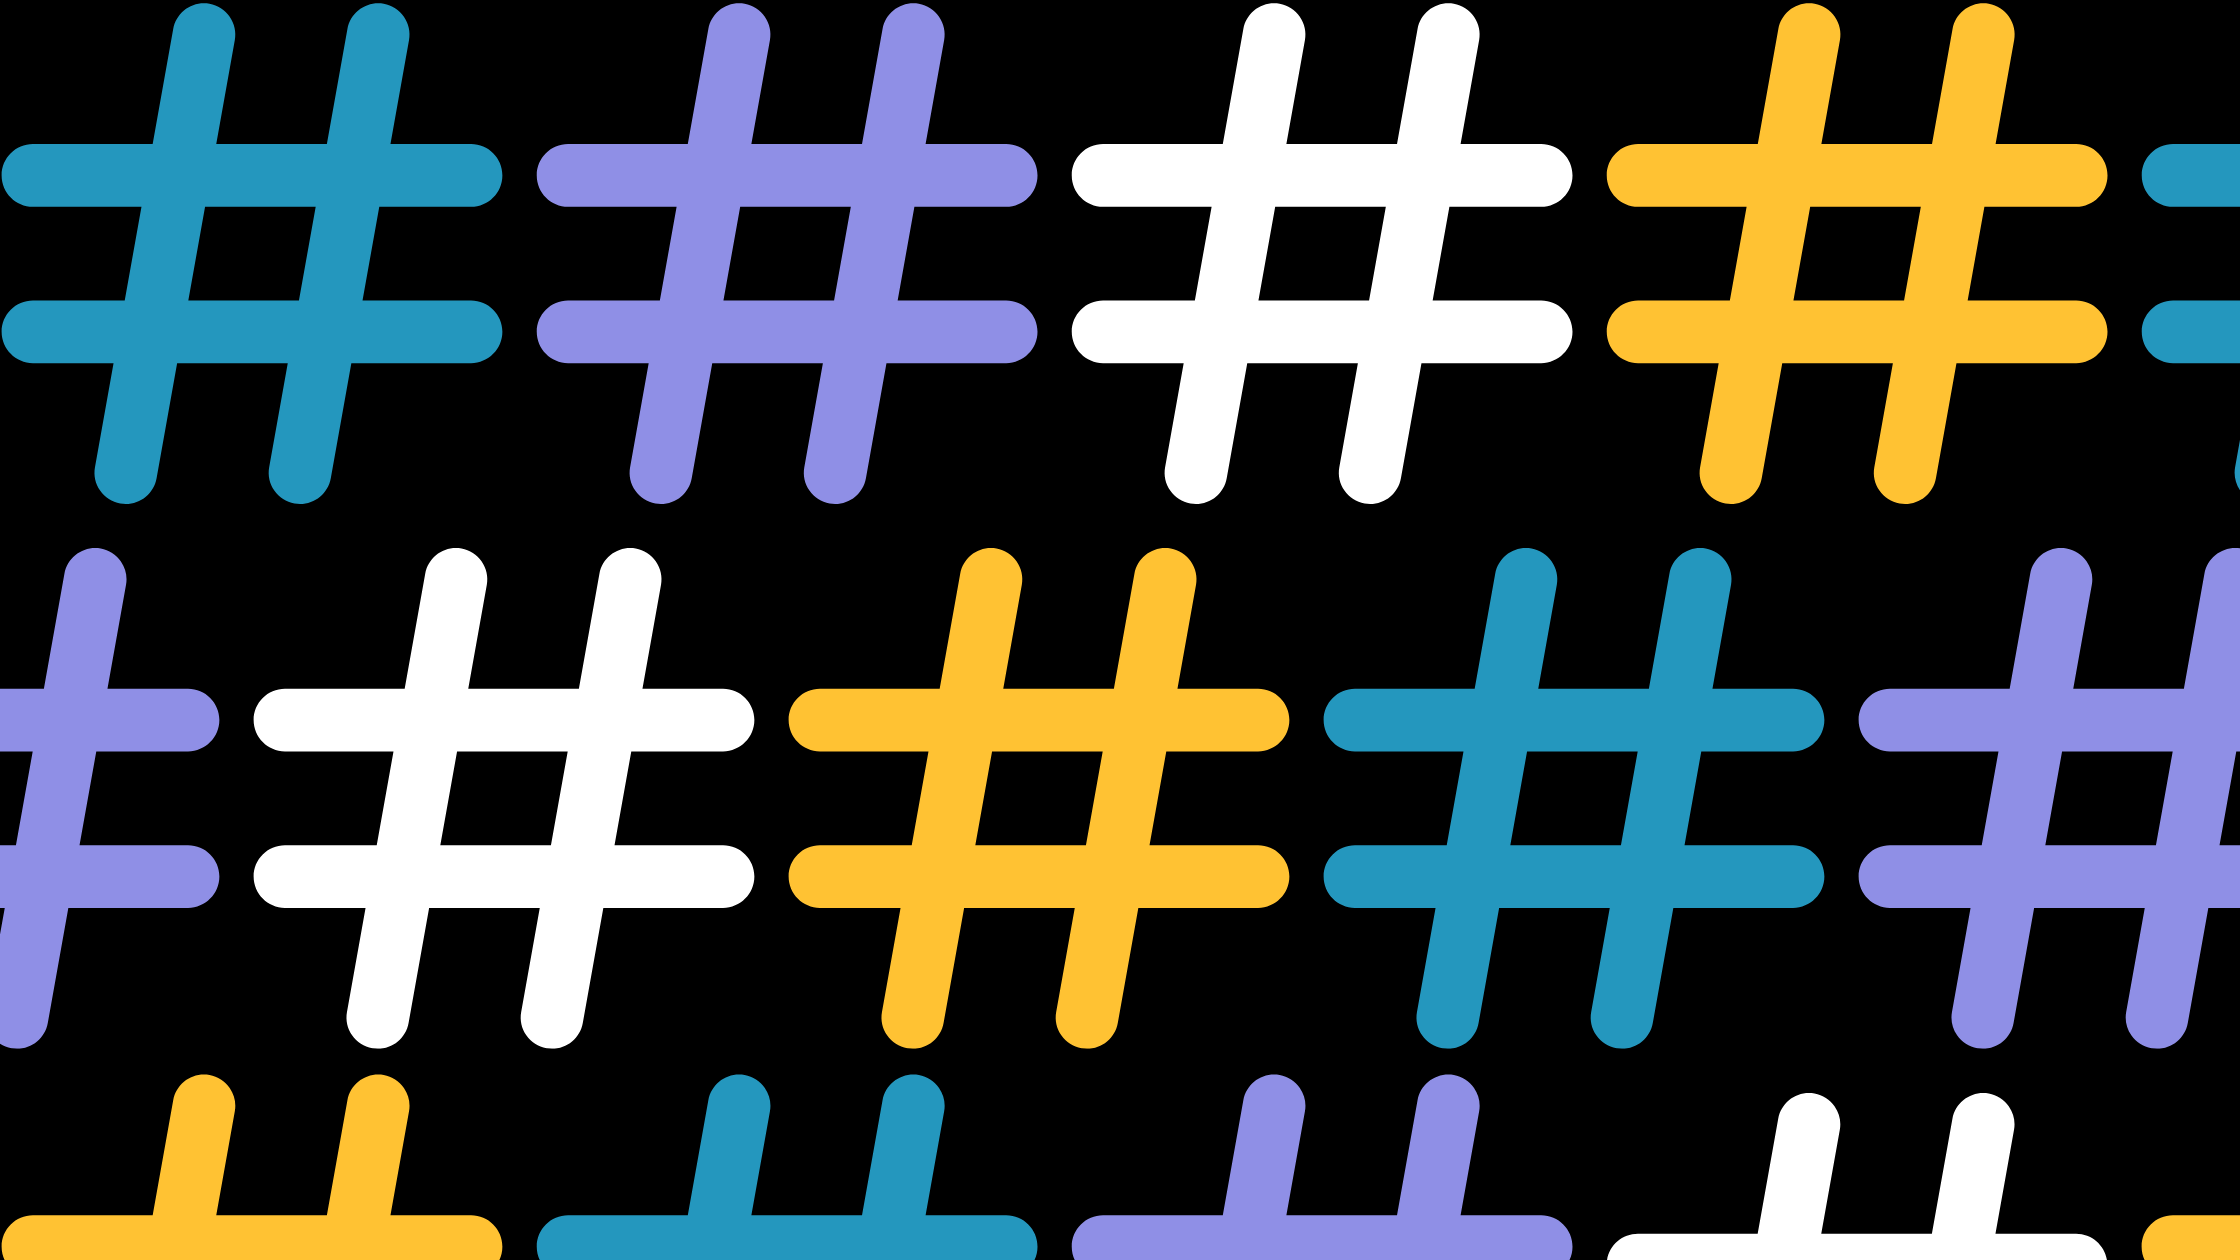 Three rows of hashtags